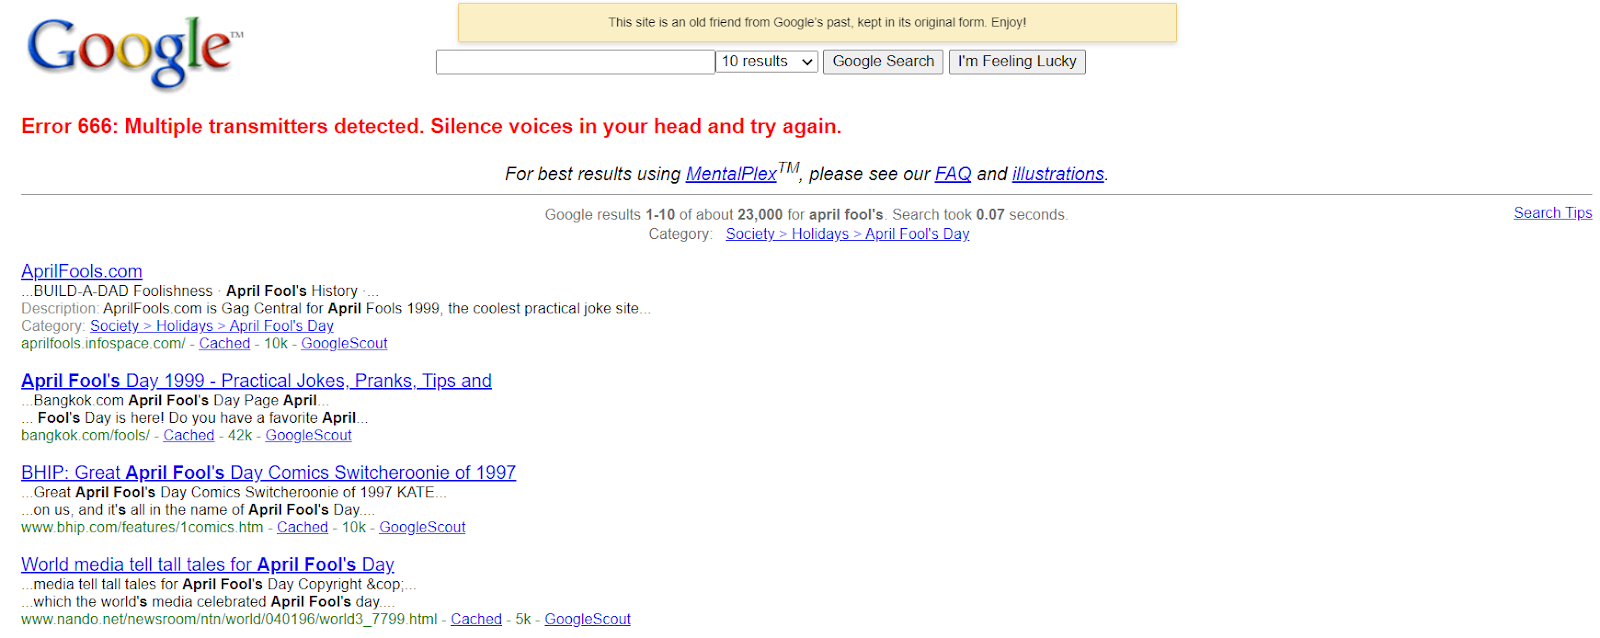 Captura de tela do Dia da Mentira Google SERP 2000 #1